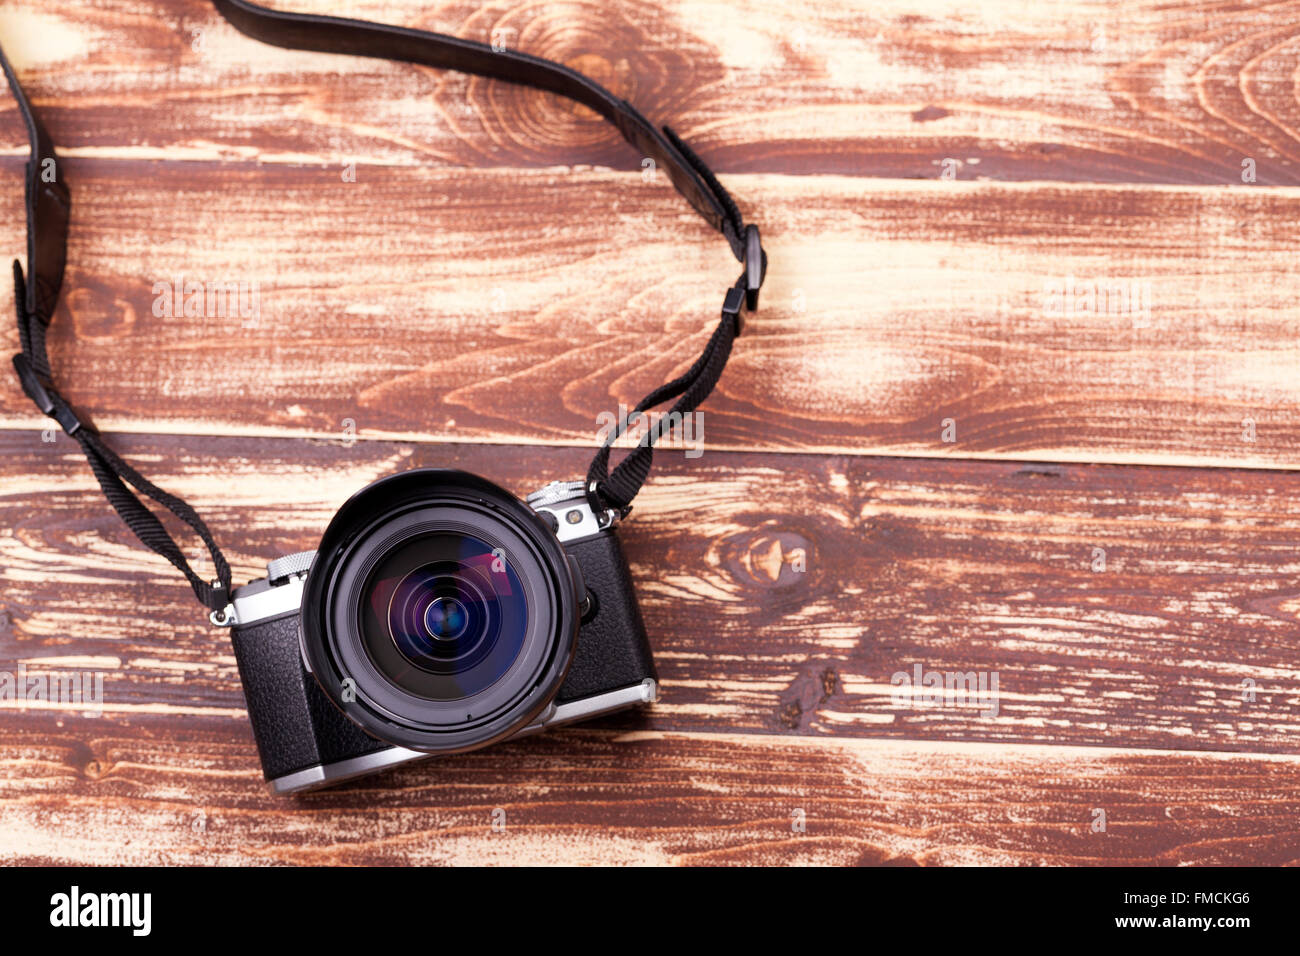 Digitalkamera mit Retro-Stil auf alten hölzernen Hintergrund Stockfoto